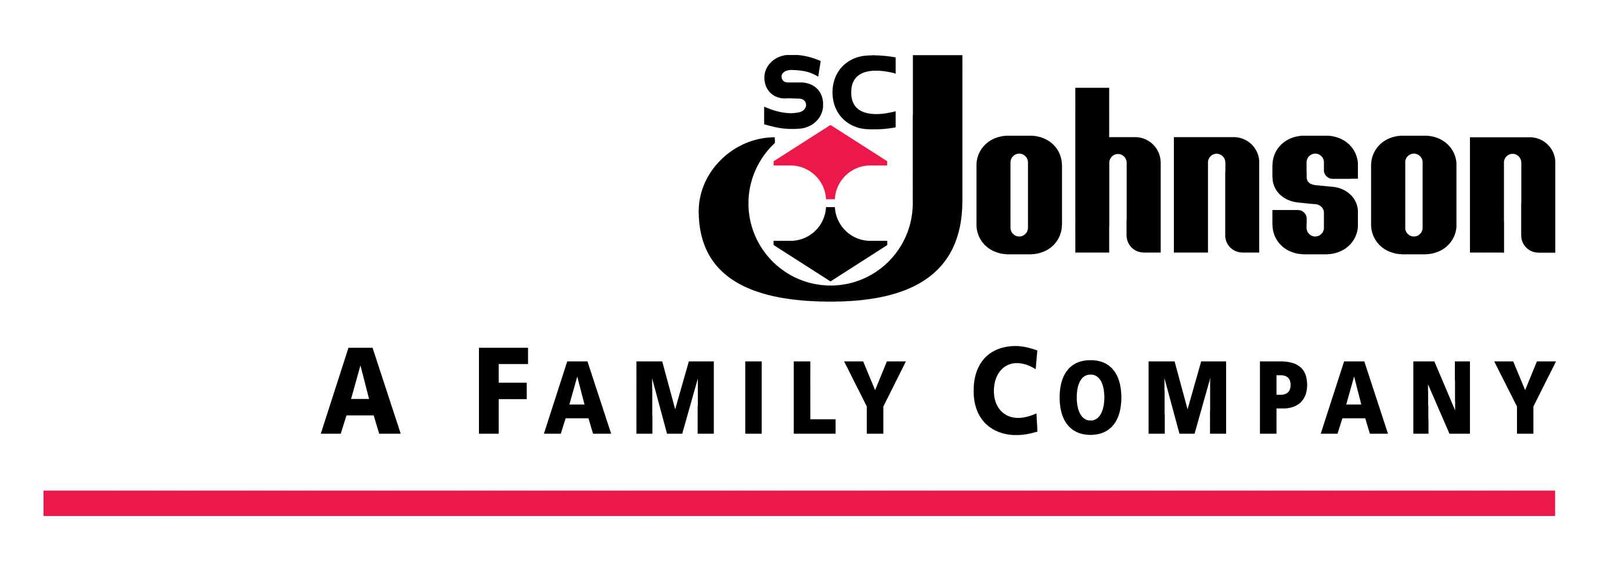 Logo de SC Jhonson